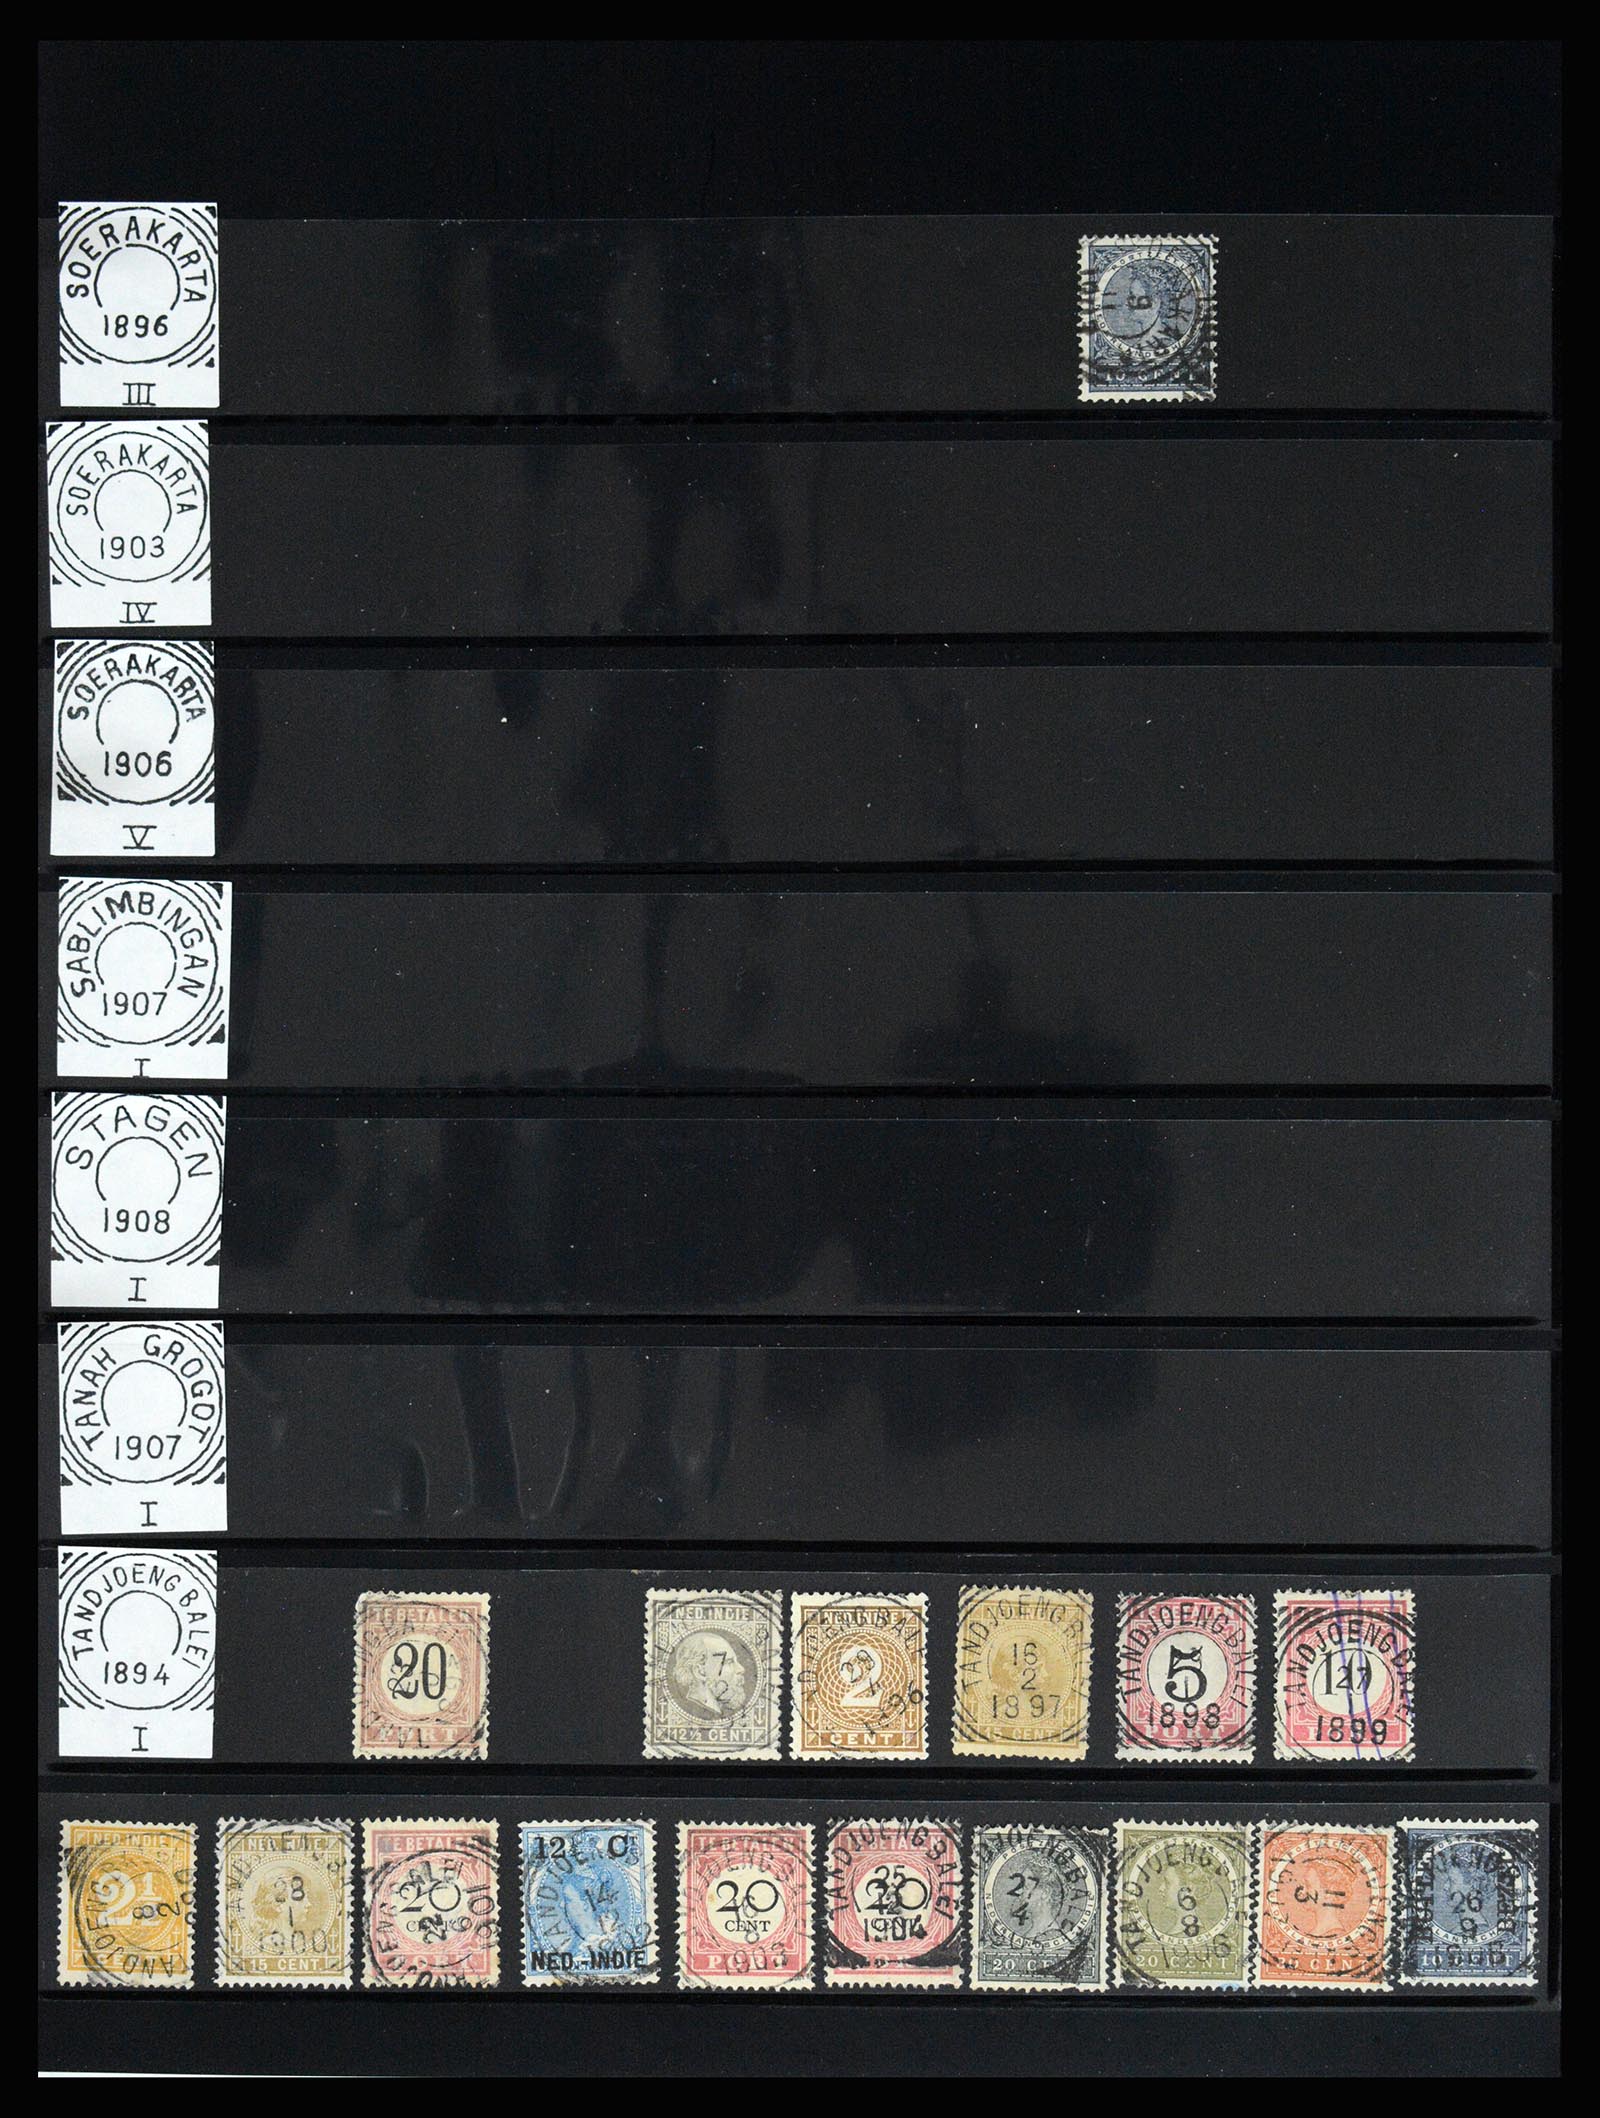 36512 152 - Stamp collection 36512 Nederlands Indië stempels 1872-1930.